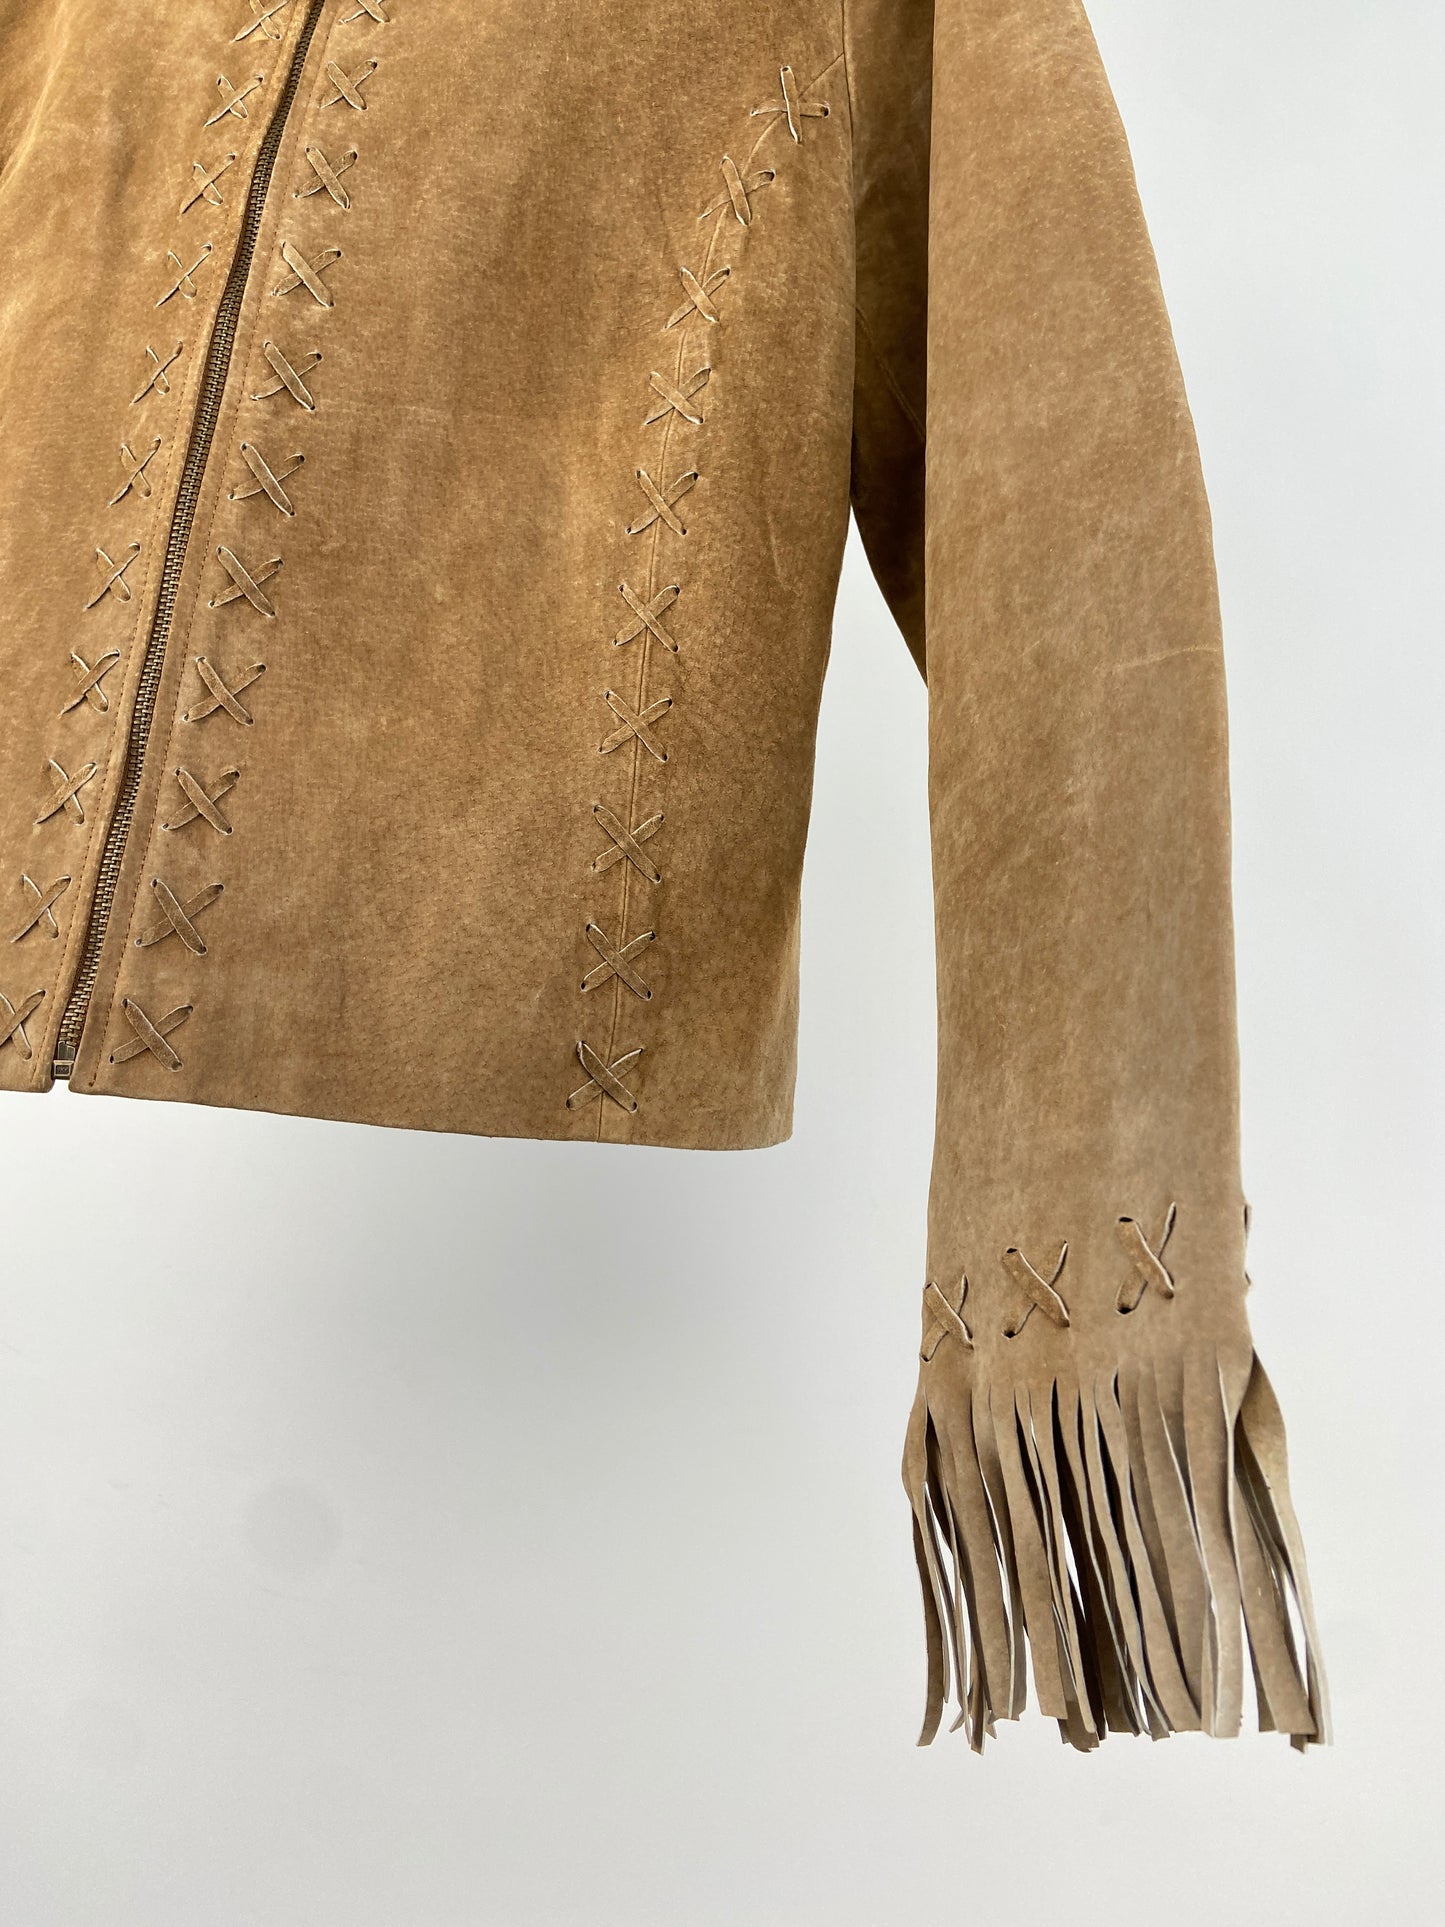 Western 70s Suede Tassel Jacket